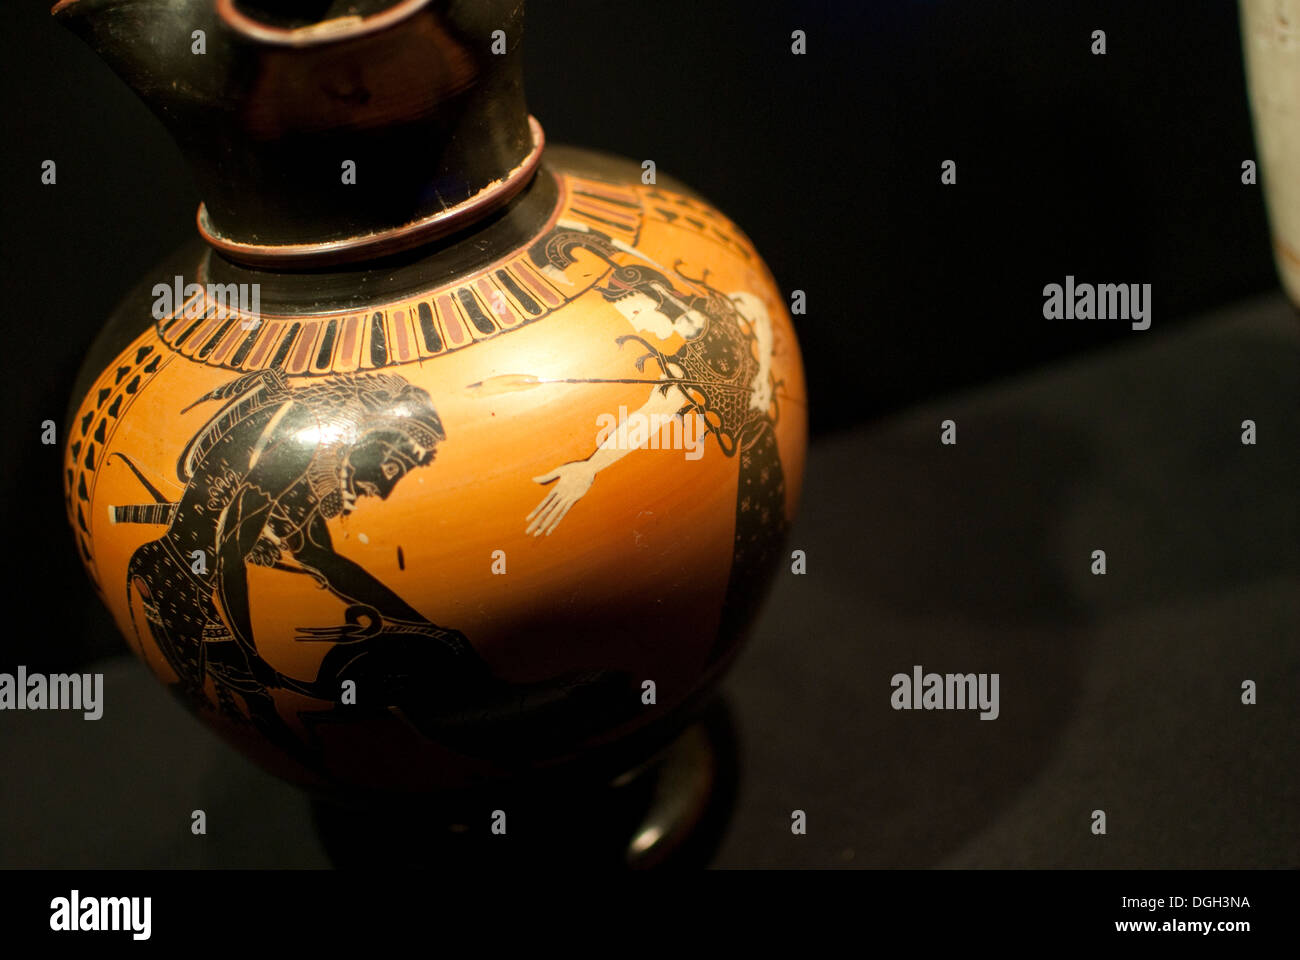 Vino Jar attribuito a Lisipides. Atene, Grecia. Tesori di culture di tutto il mondo" Foto Stock